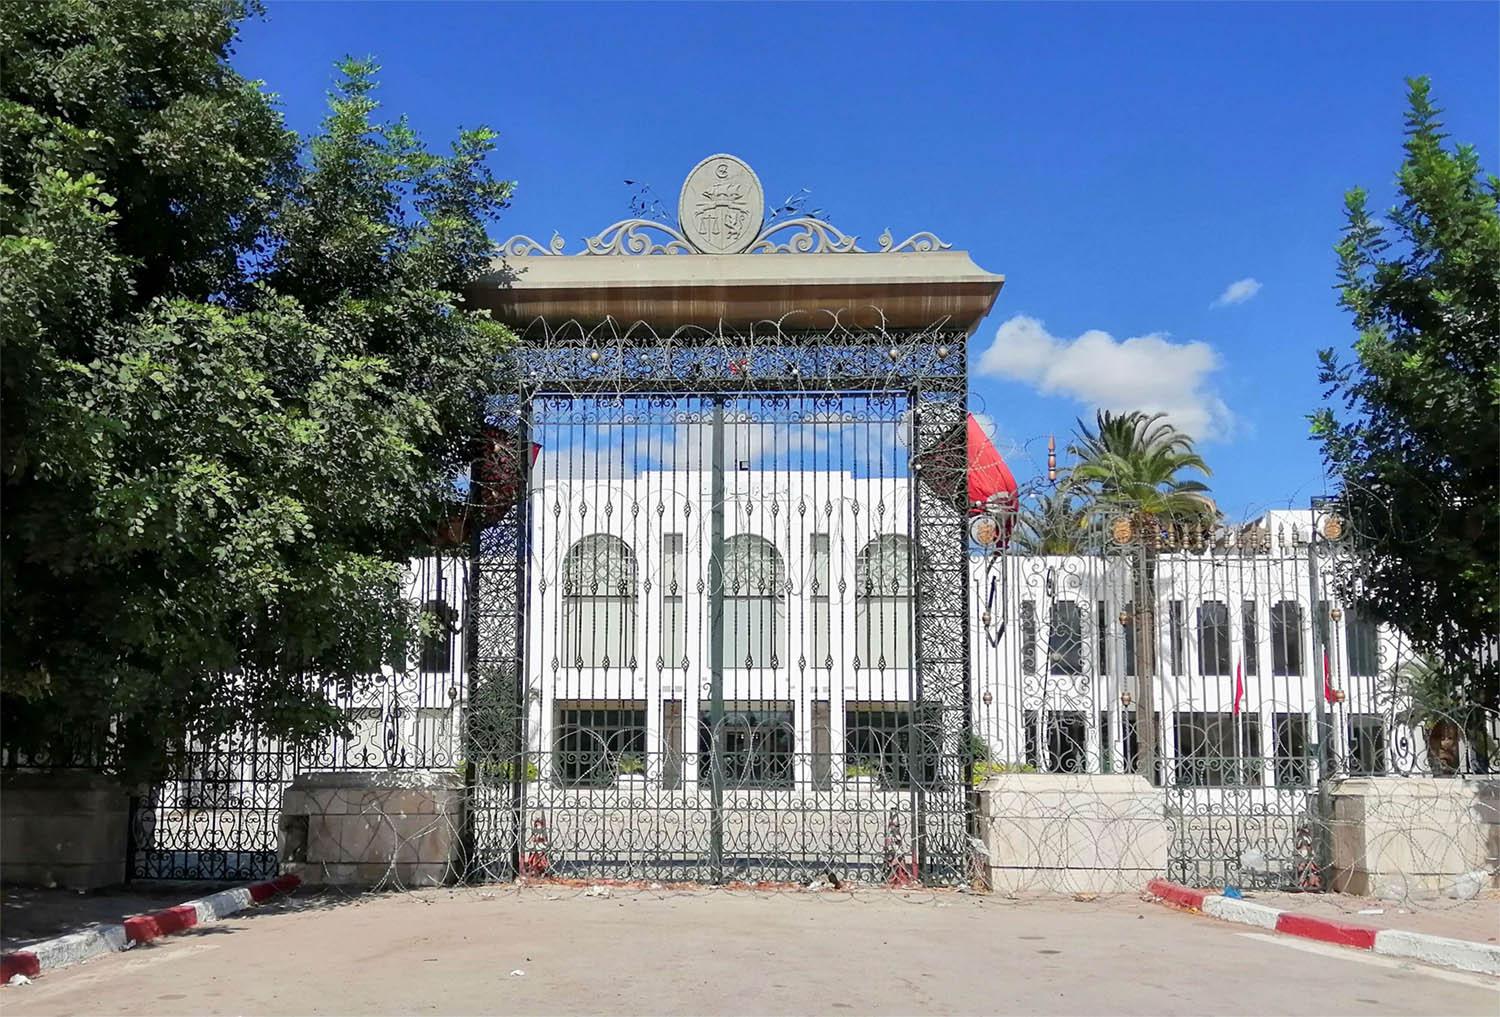 Tunisia's parliament remains closed